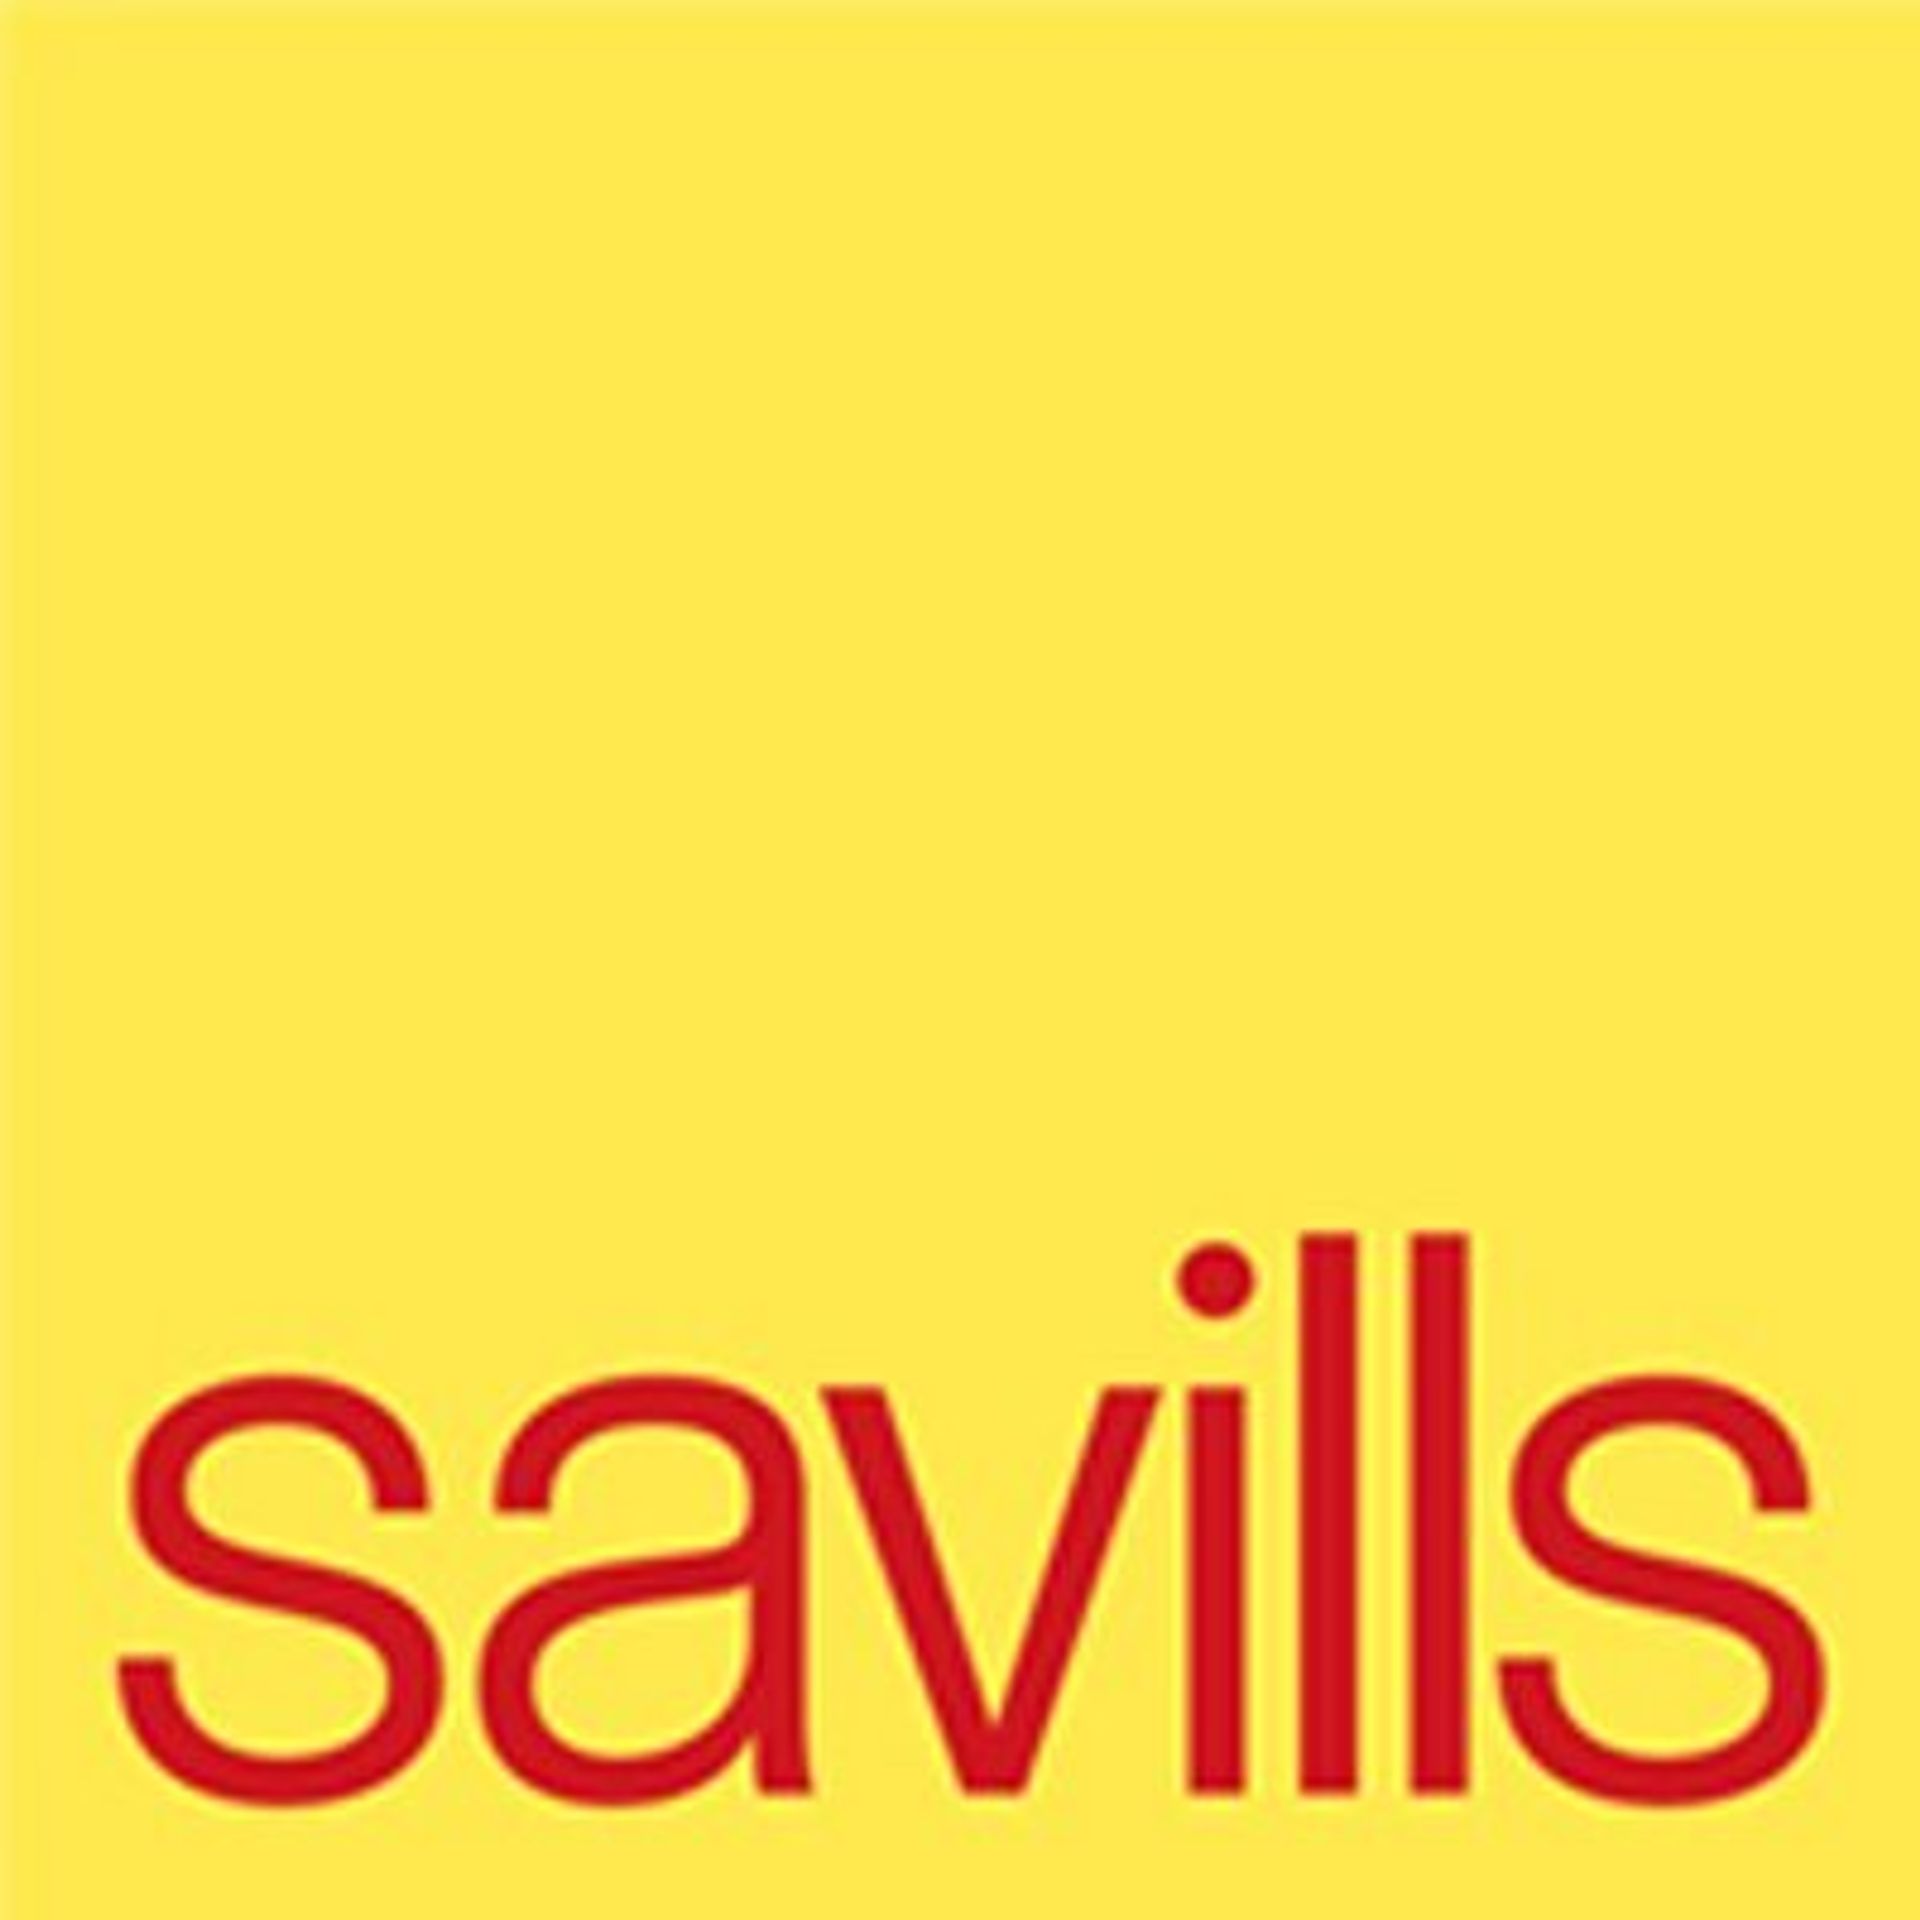  Savills wskazuje dziesięć trendów na europejskim rynku inwestycyjnym